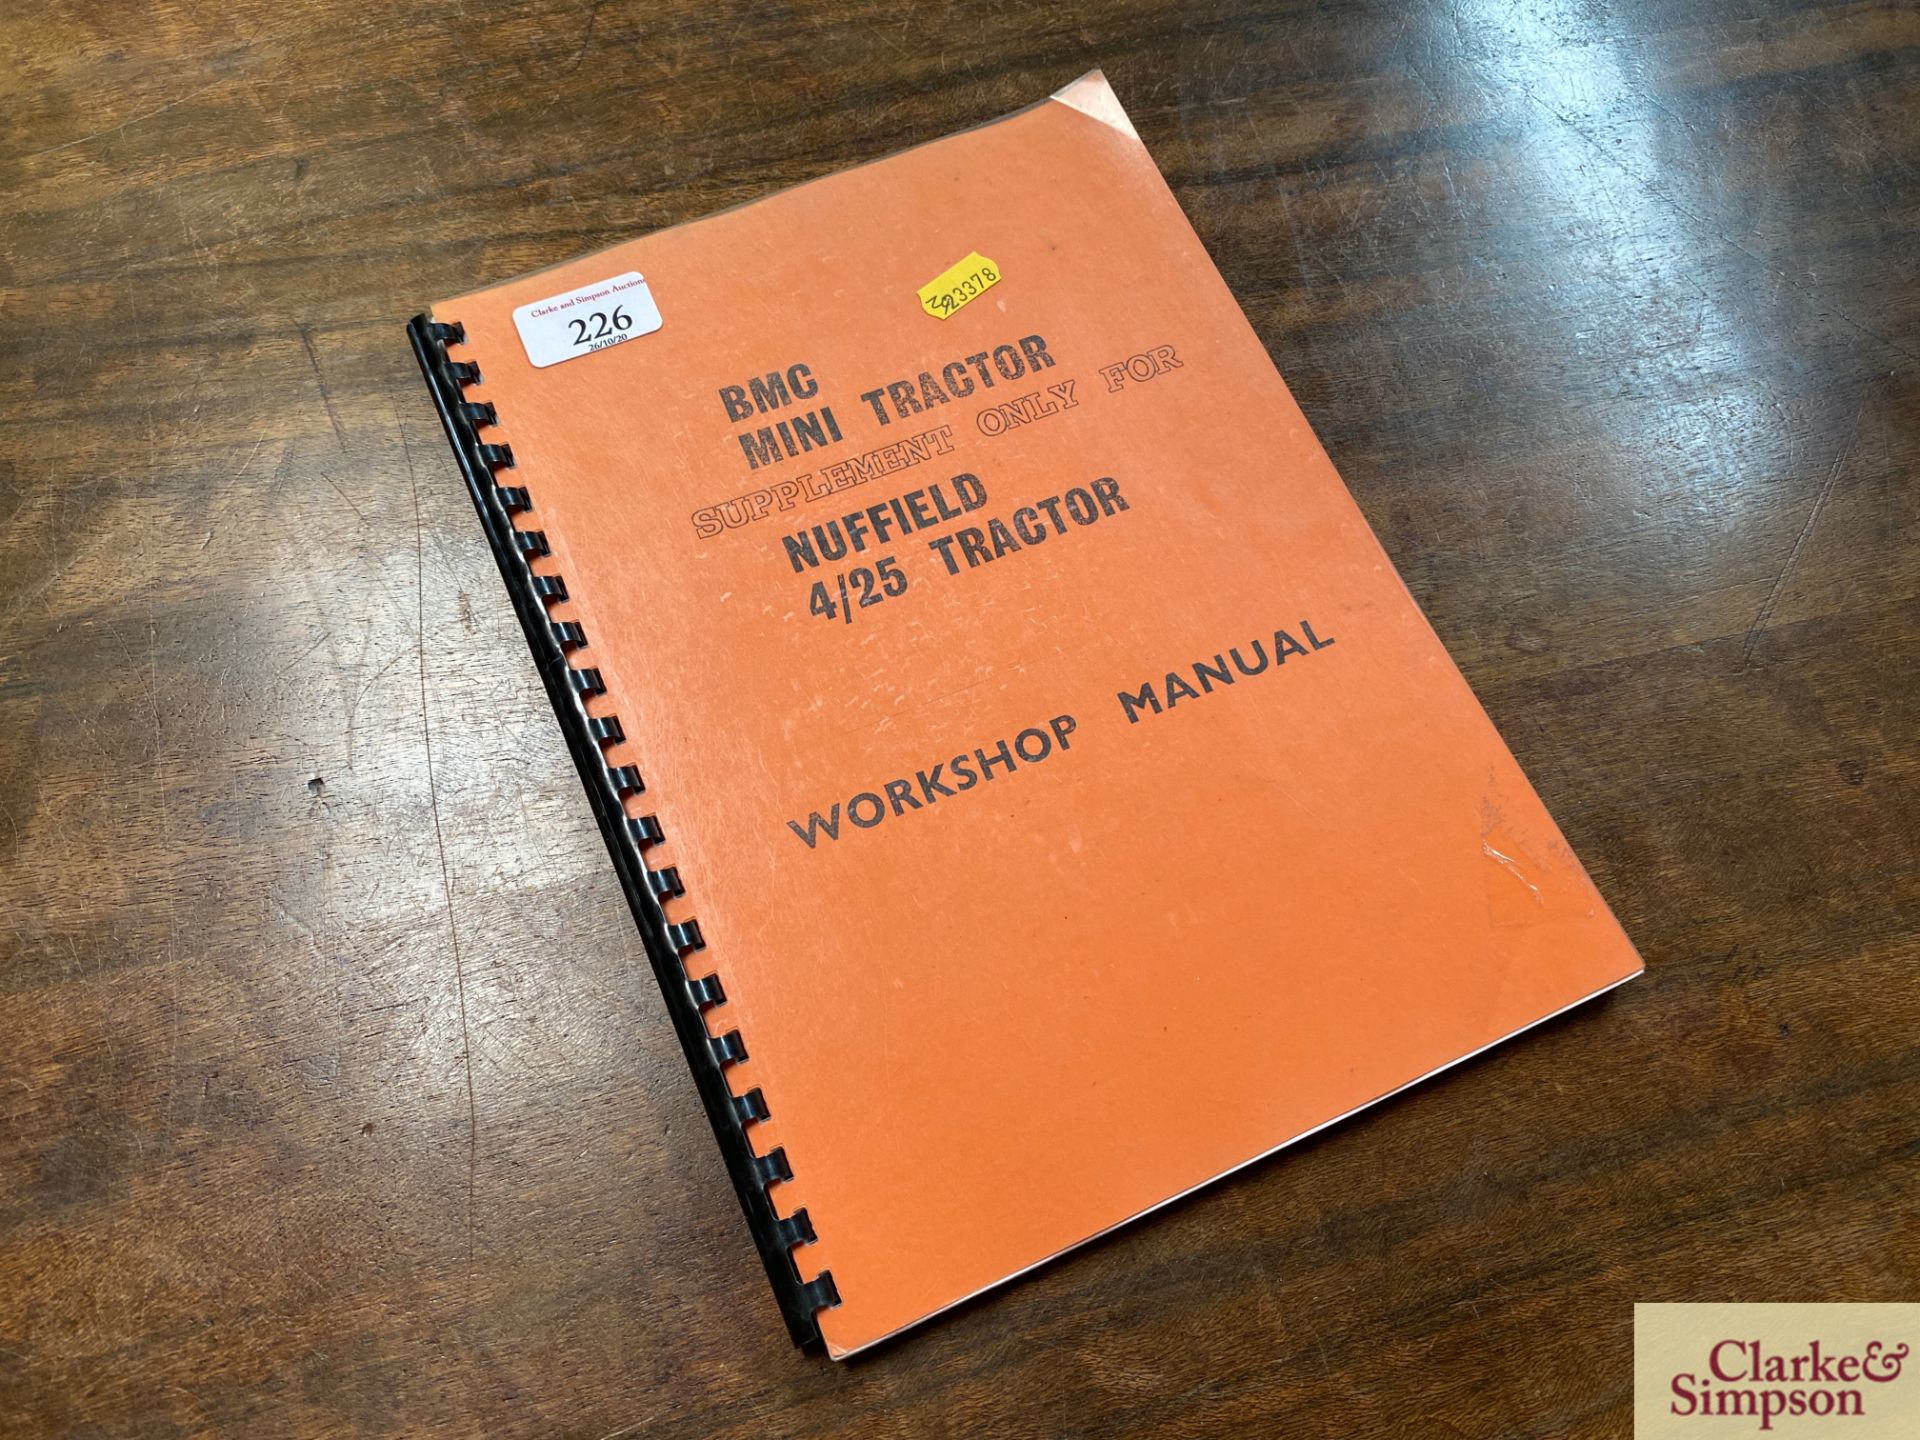 BMC Mini Tractor Workshop Manual Supplement.